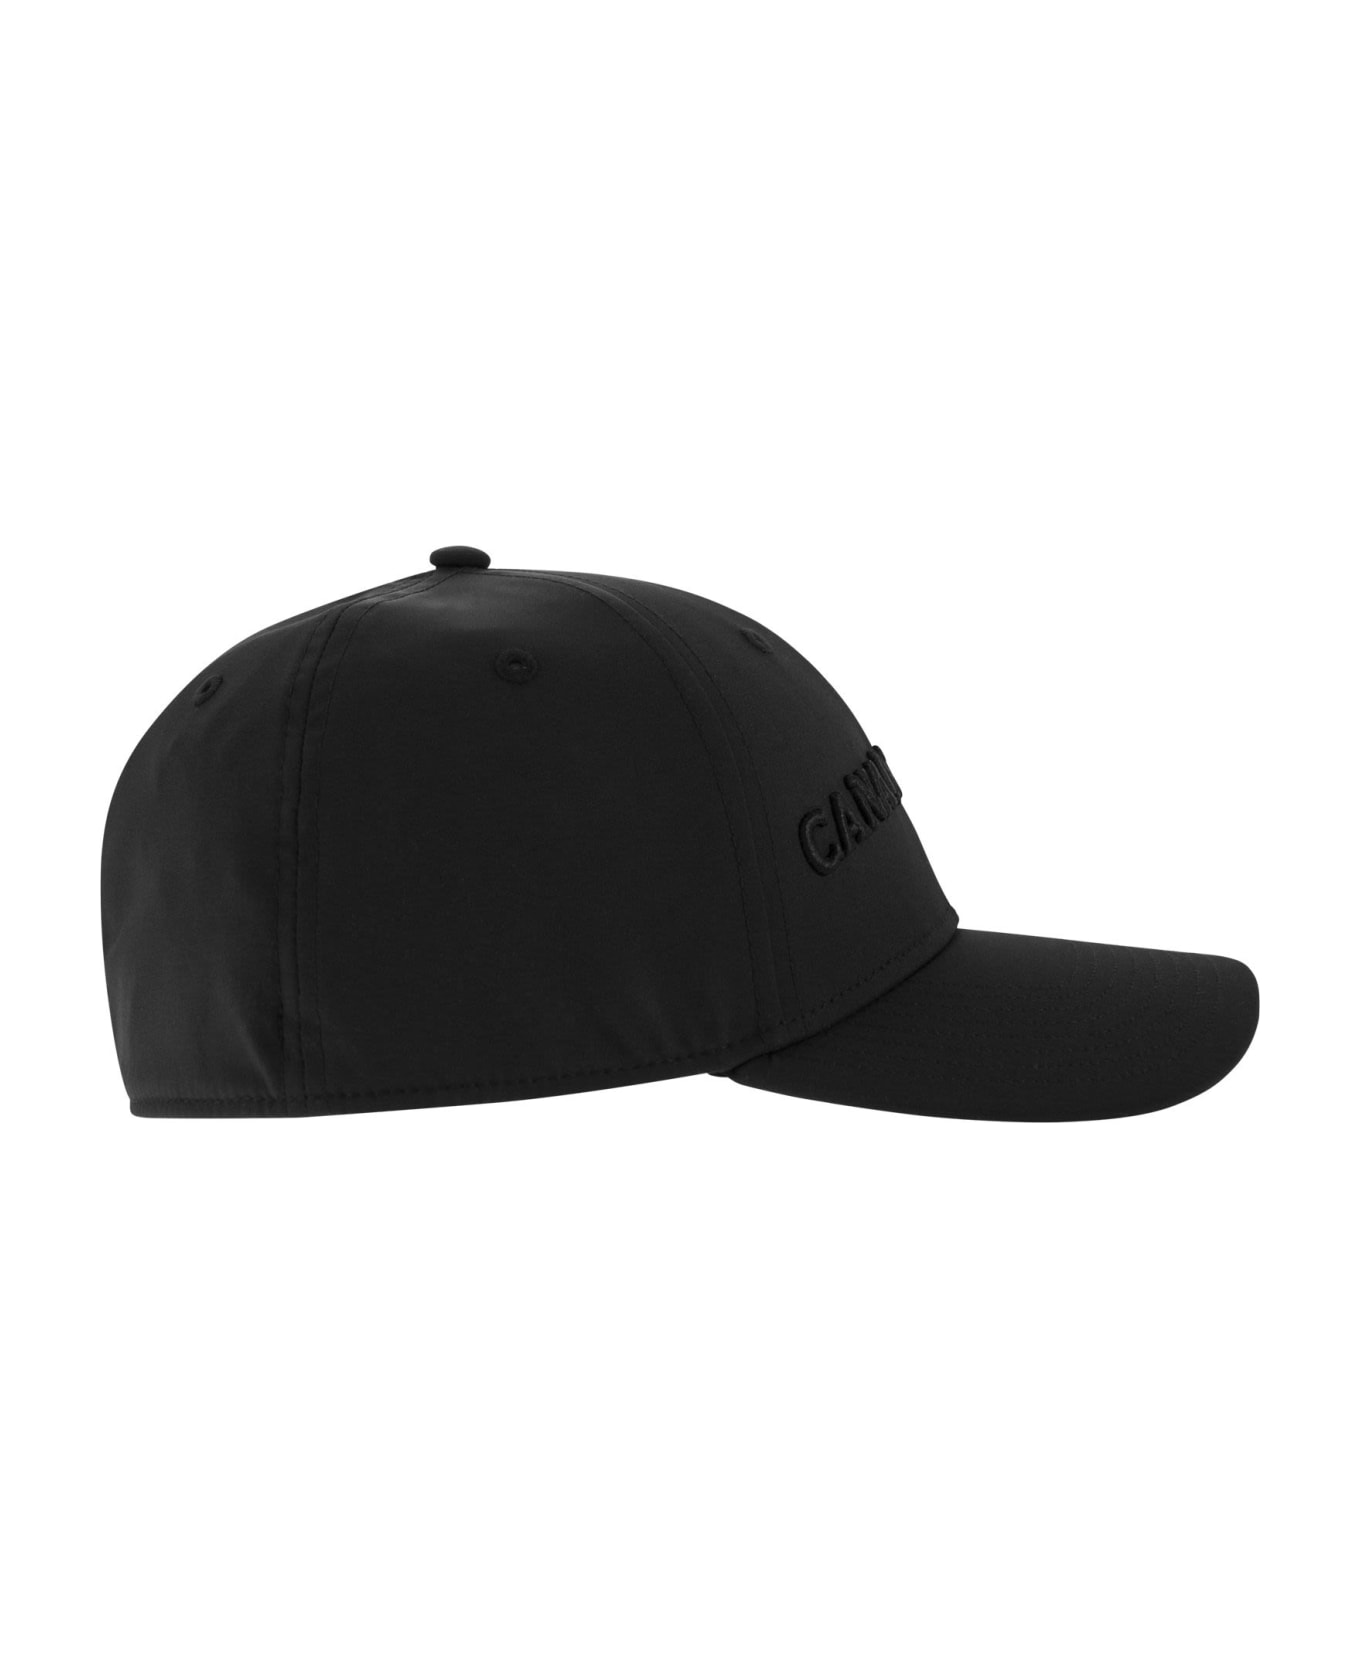 Canada Goose Tech Baseball Cap - Black